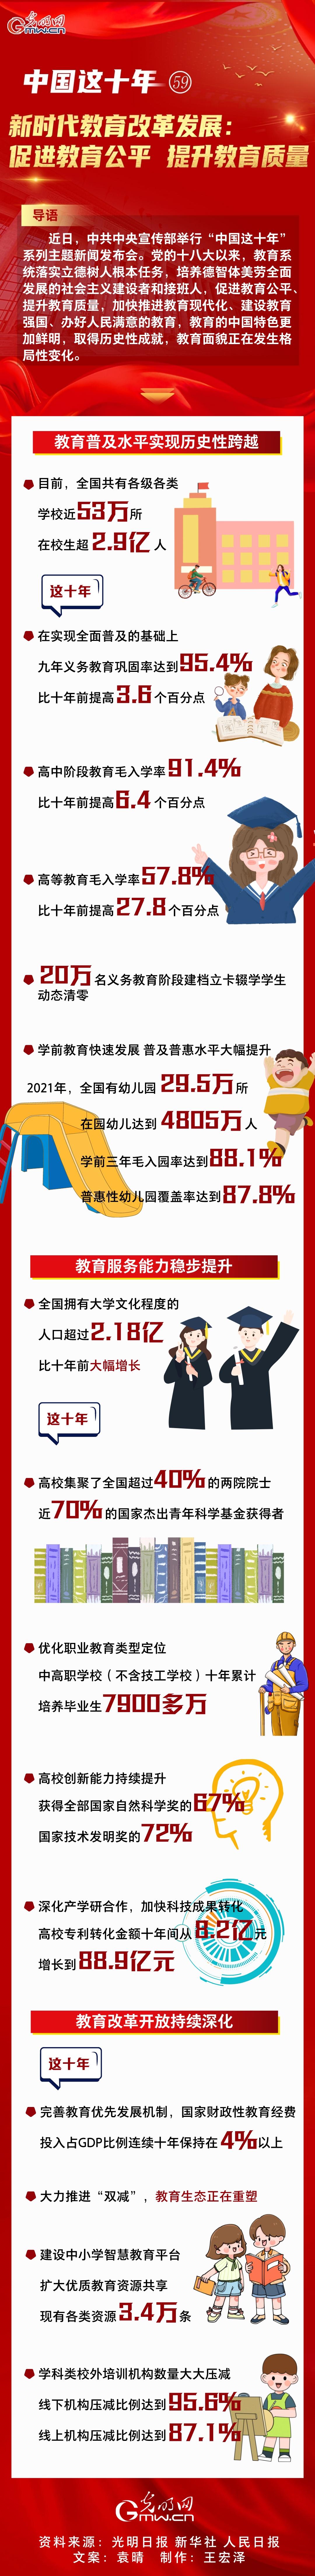 【中国这十年59】一图速览 新时代教育改革发展：促进教育公平 提升教育质量